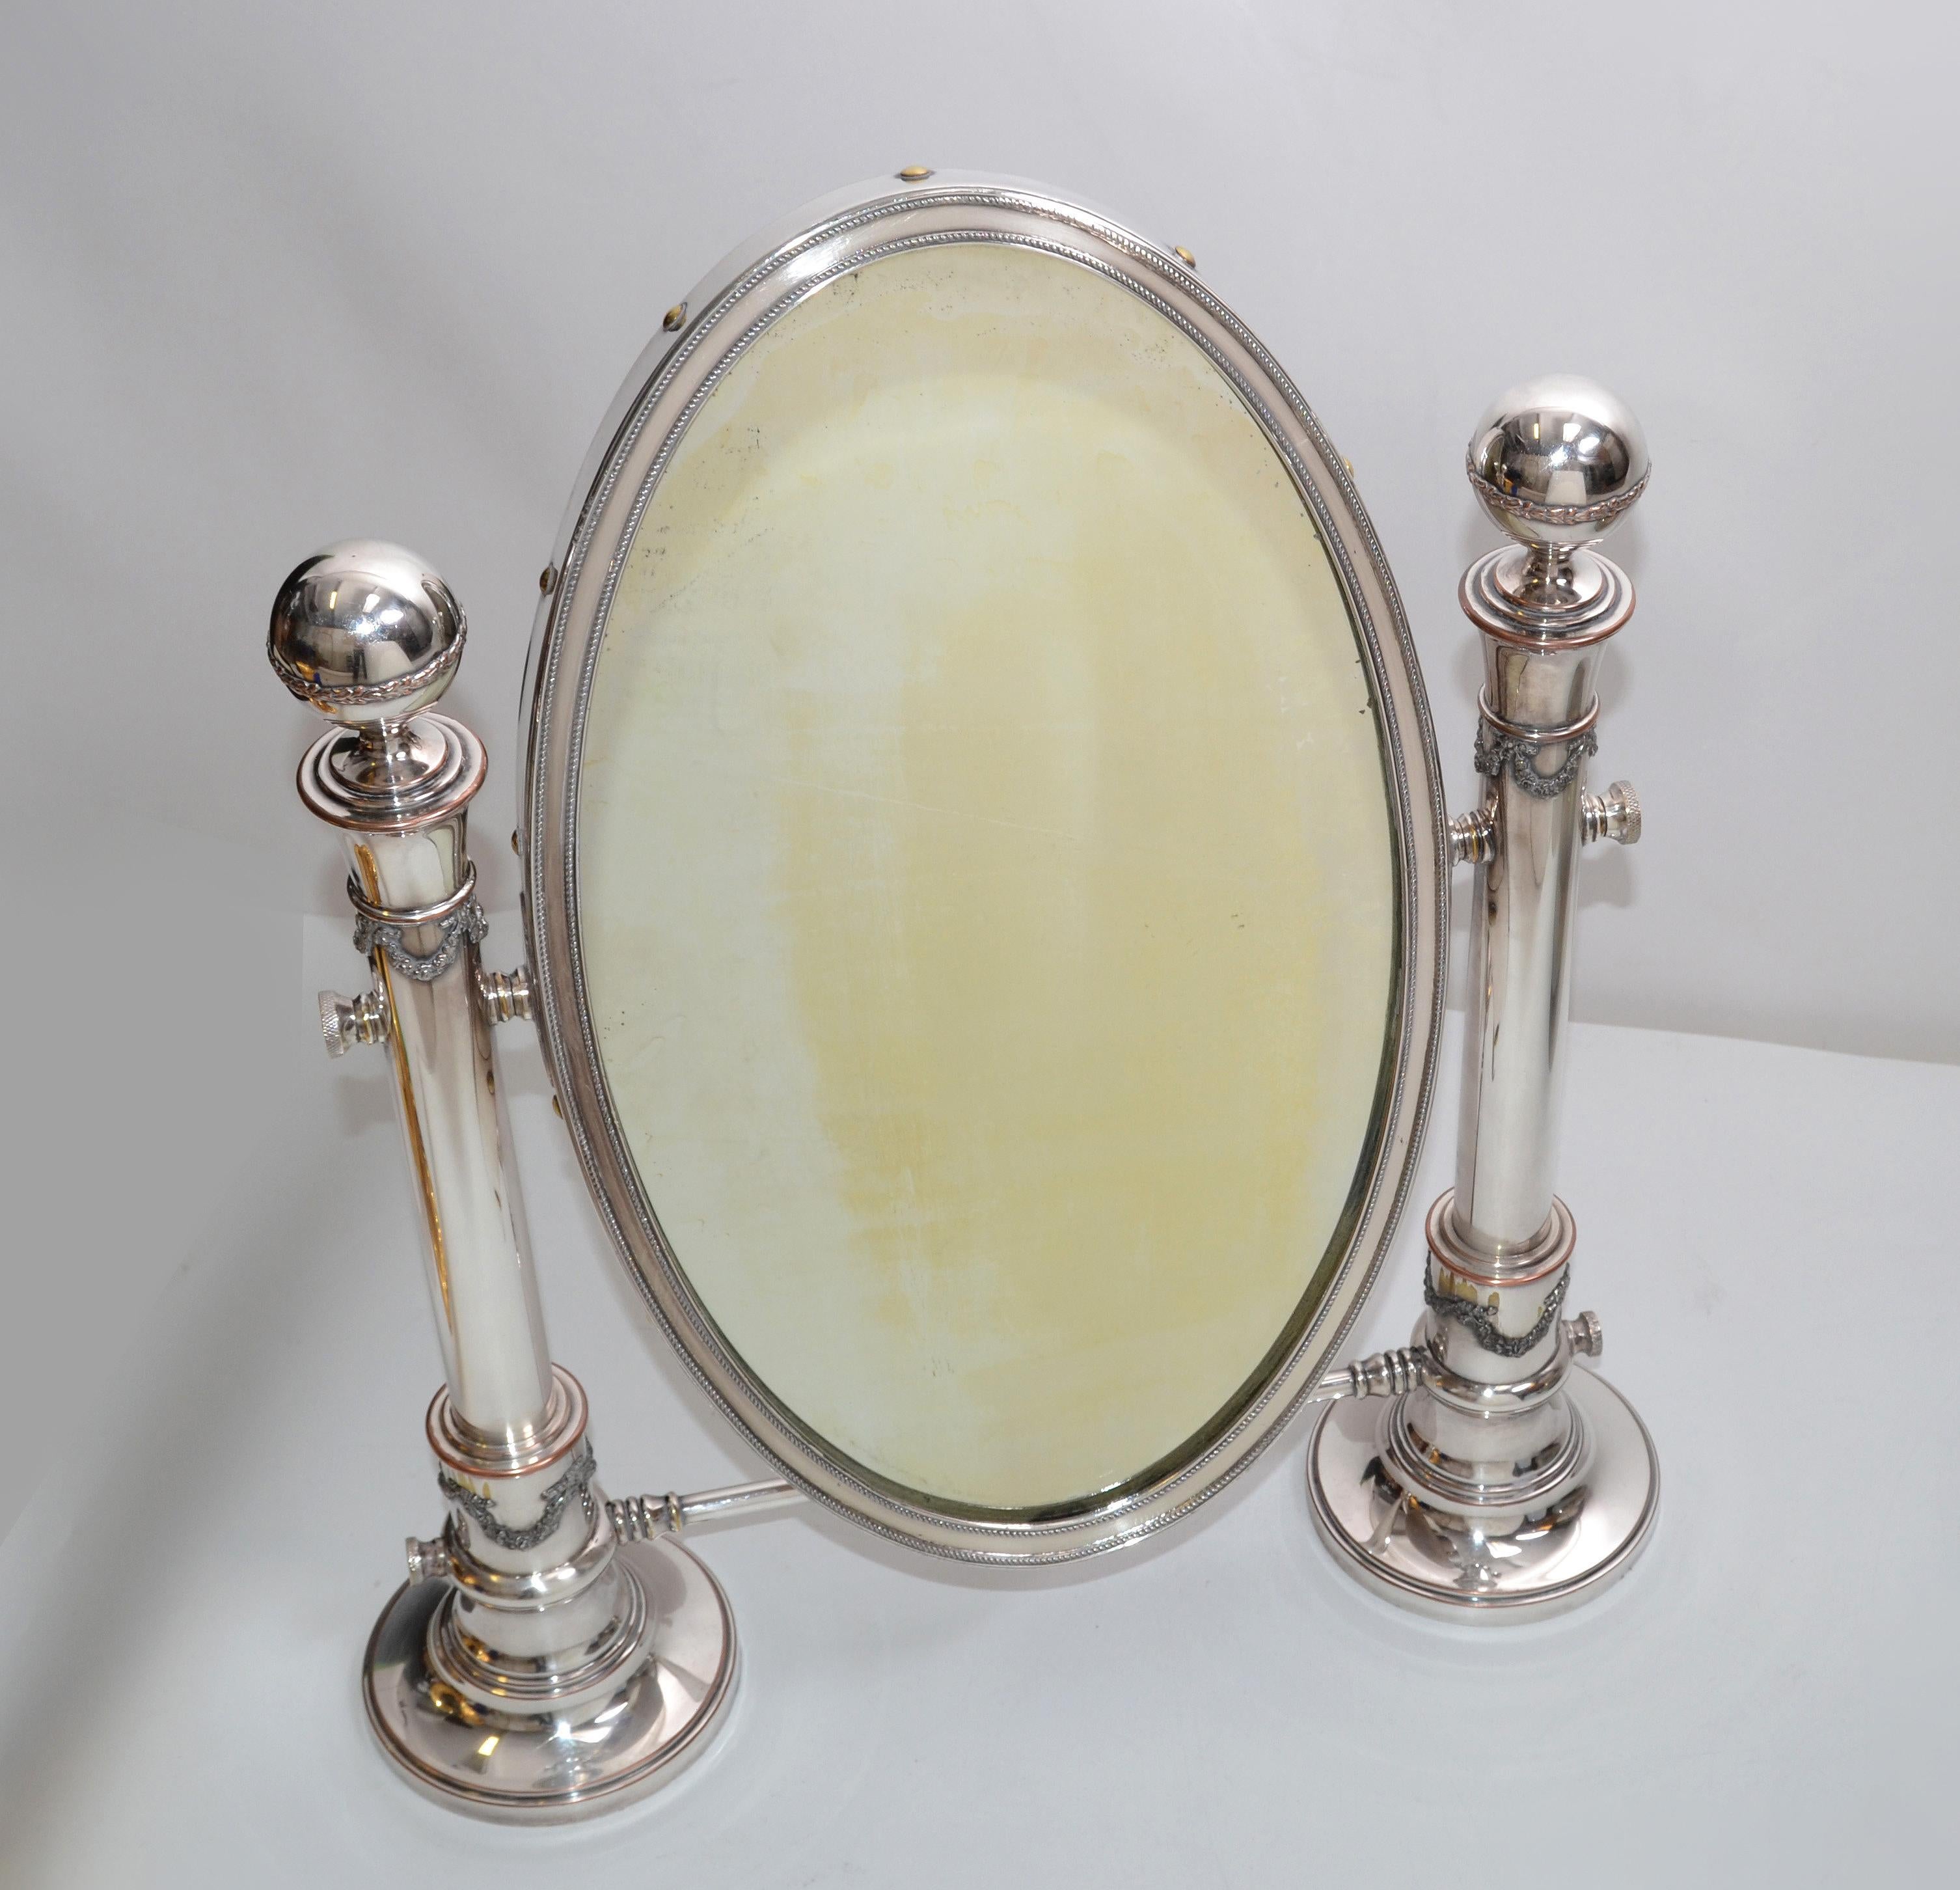 Miroir de courtoisie ou miroir de table ovale en métal argenté avec piédestaux ornés vers 1910 Sheffield, Angleterre.
Le dossier est en bois massif.
Marque de fabrique sur le côté du miroir.
Taille du miroir : 9 x 15 pouces.